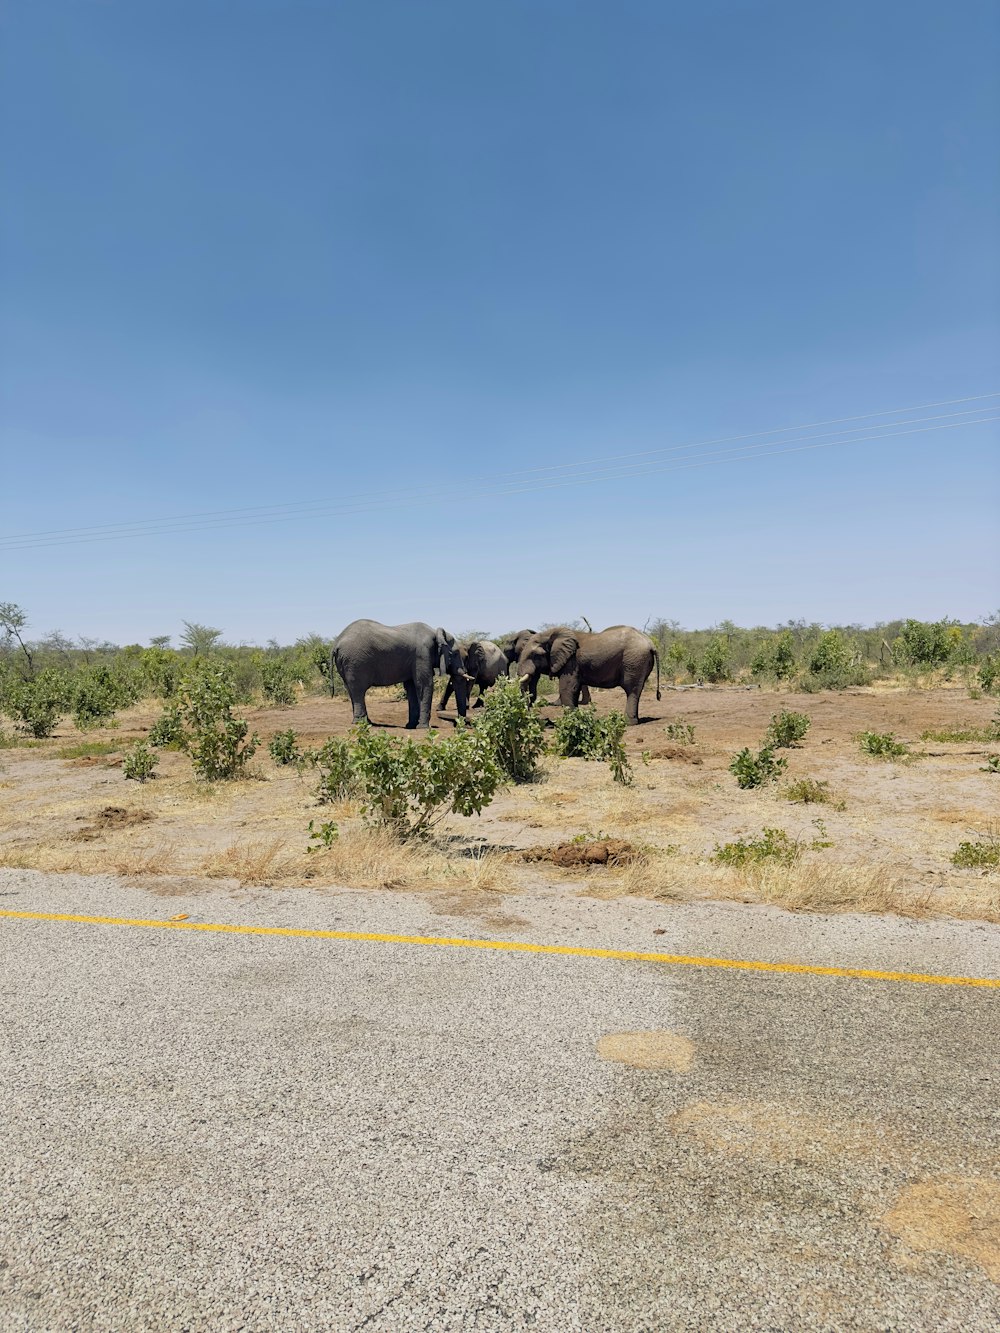 a herd of elephants walking across a dry grass field